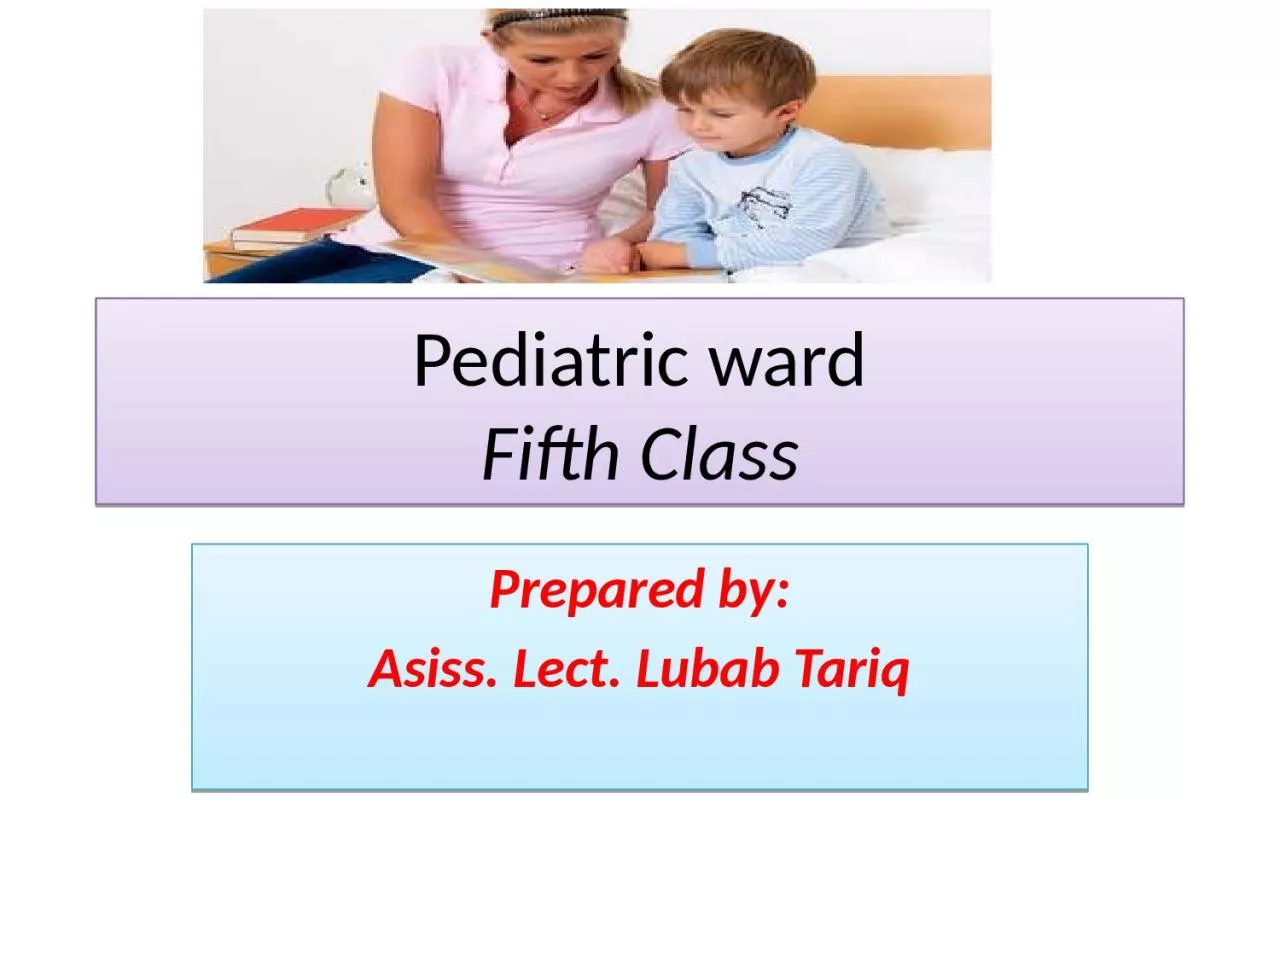 Pediatric ward Fifth Class